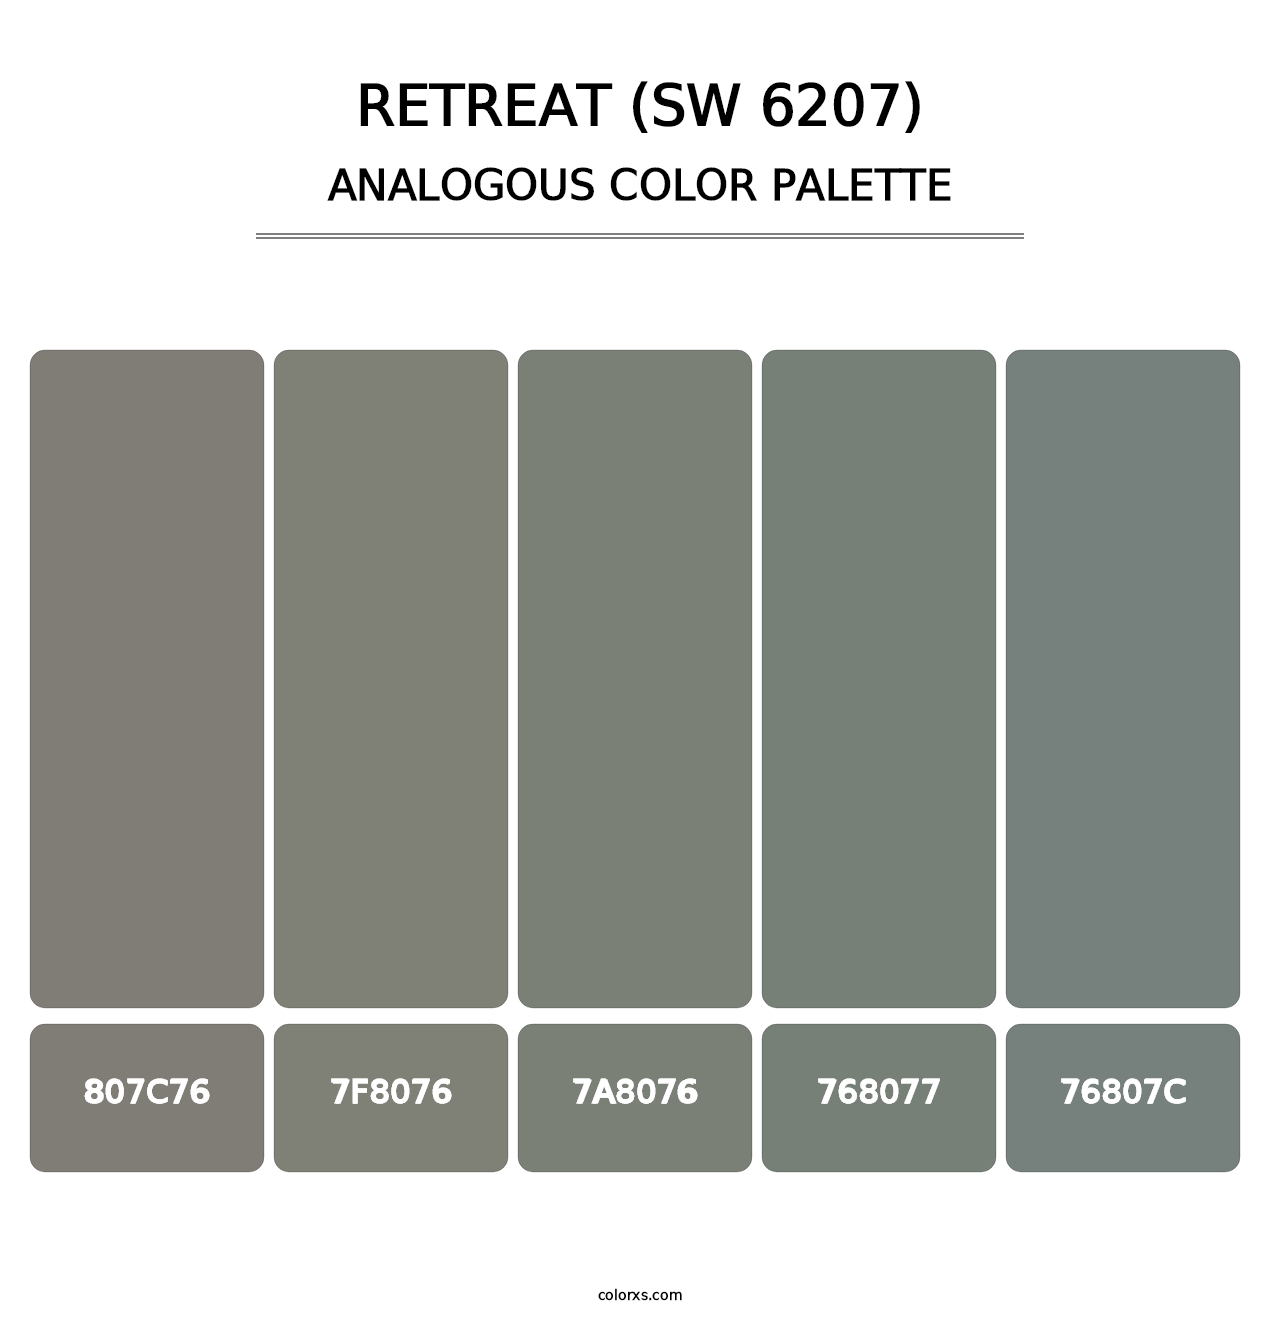 Retreat (SW 6207) - Analogous Color Palette